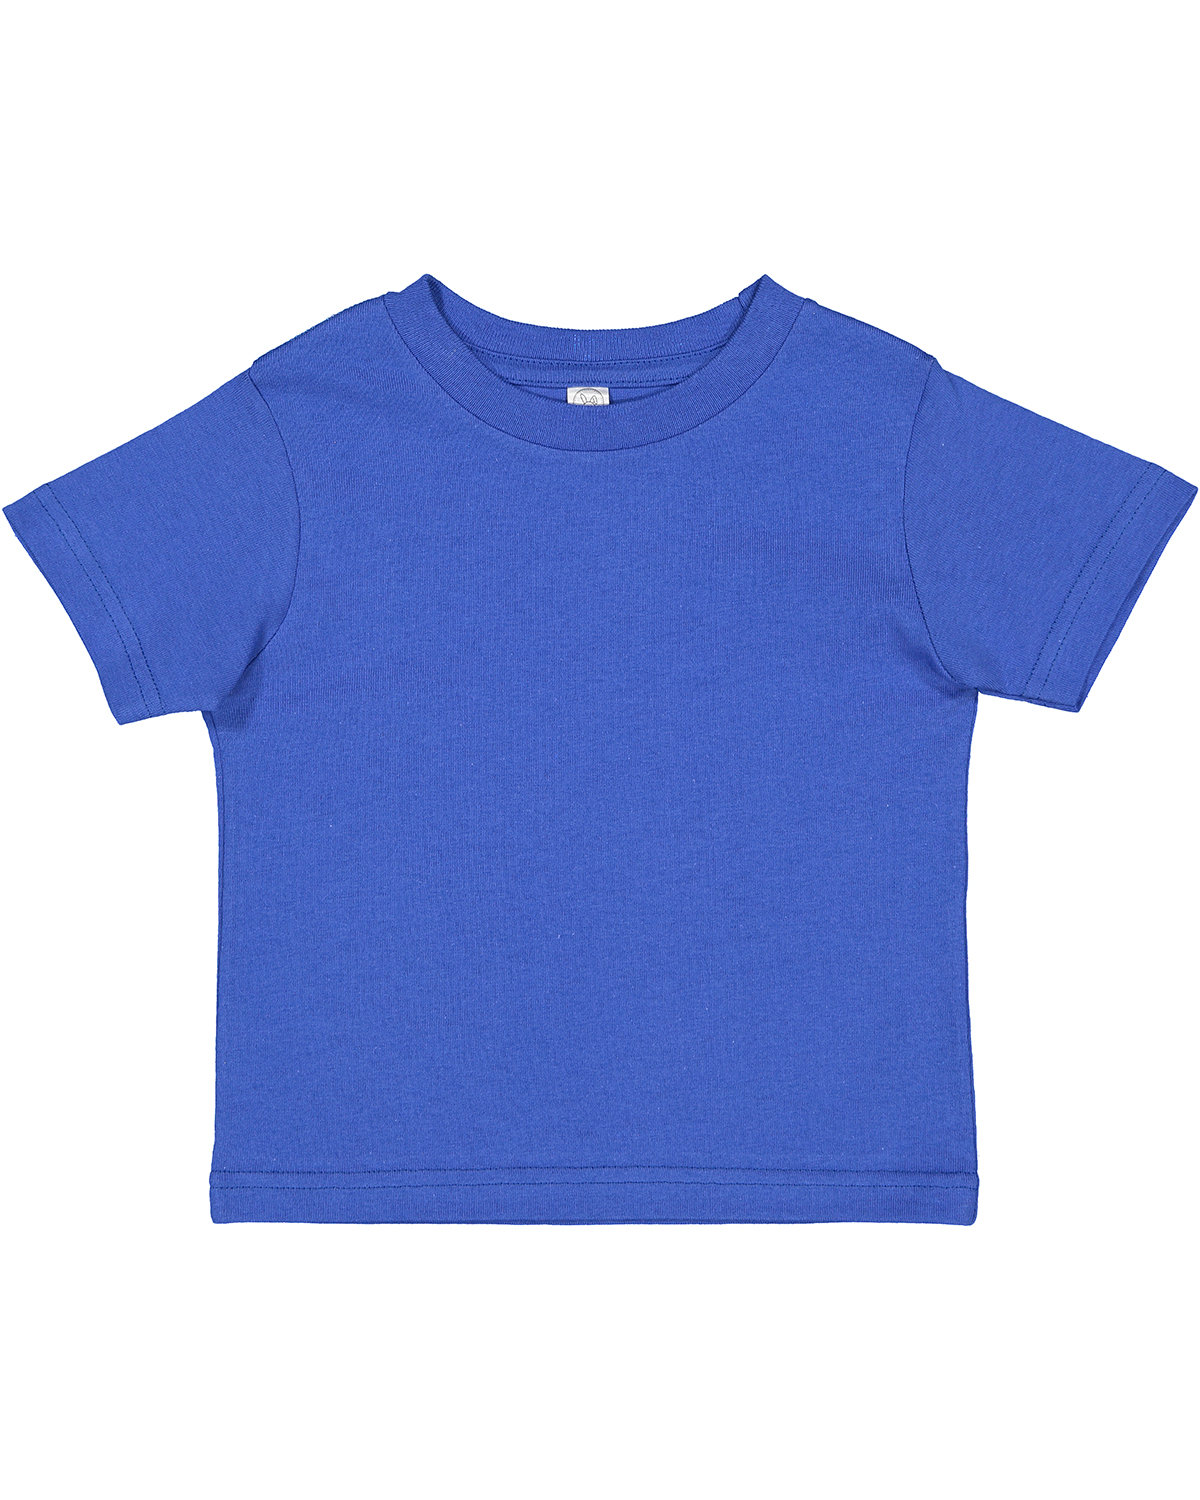 Rabbit Skins Toddler Cotton Jersey T-Shirt ROYAL 